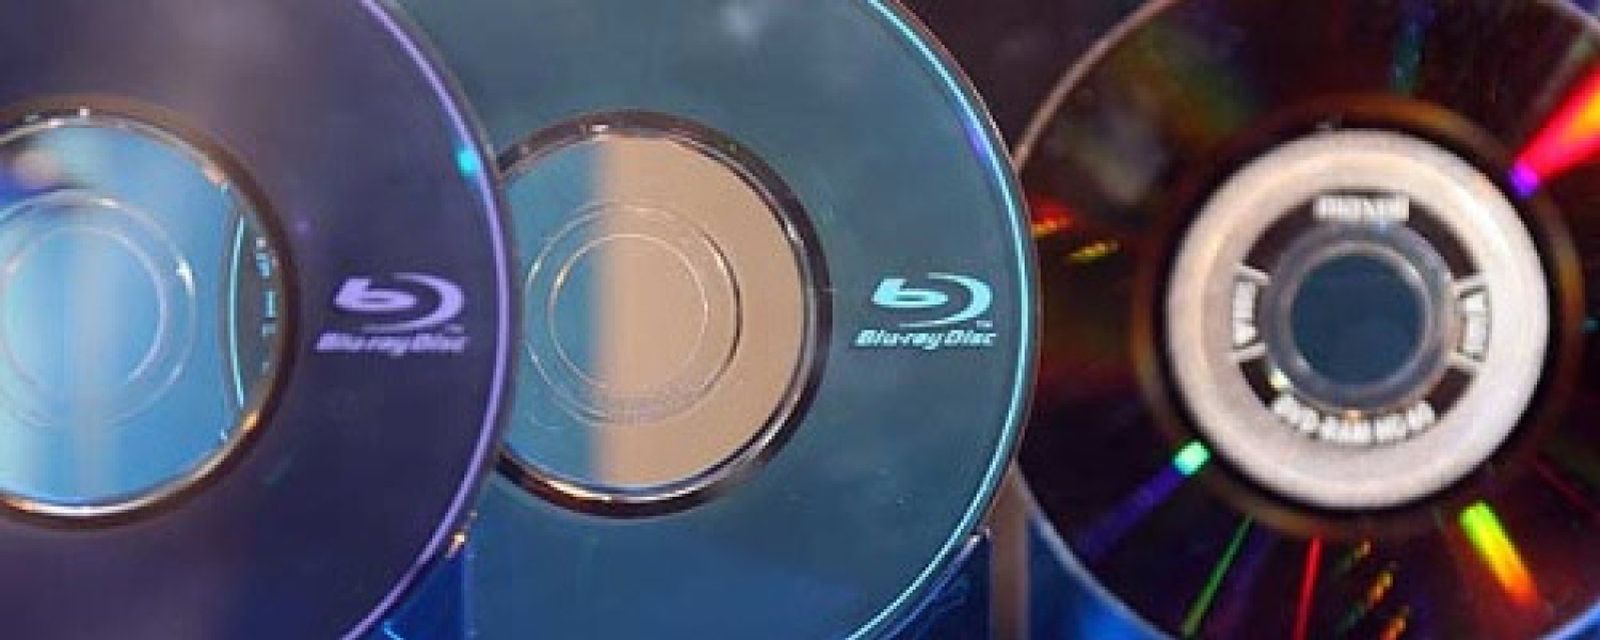 Foto: Sony cerrará el año que viene su división de DVD y Blu-ray